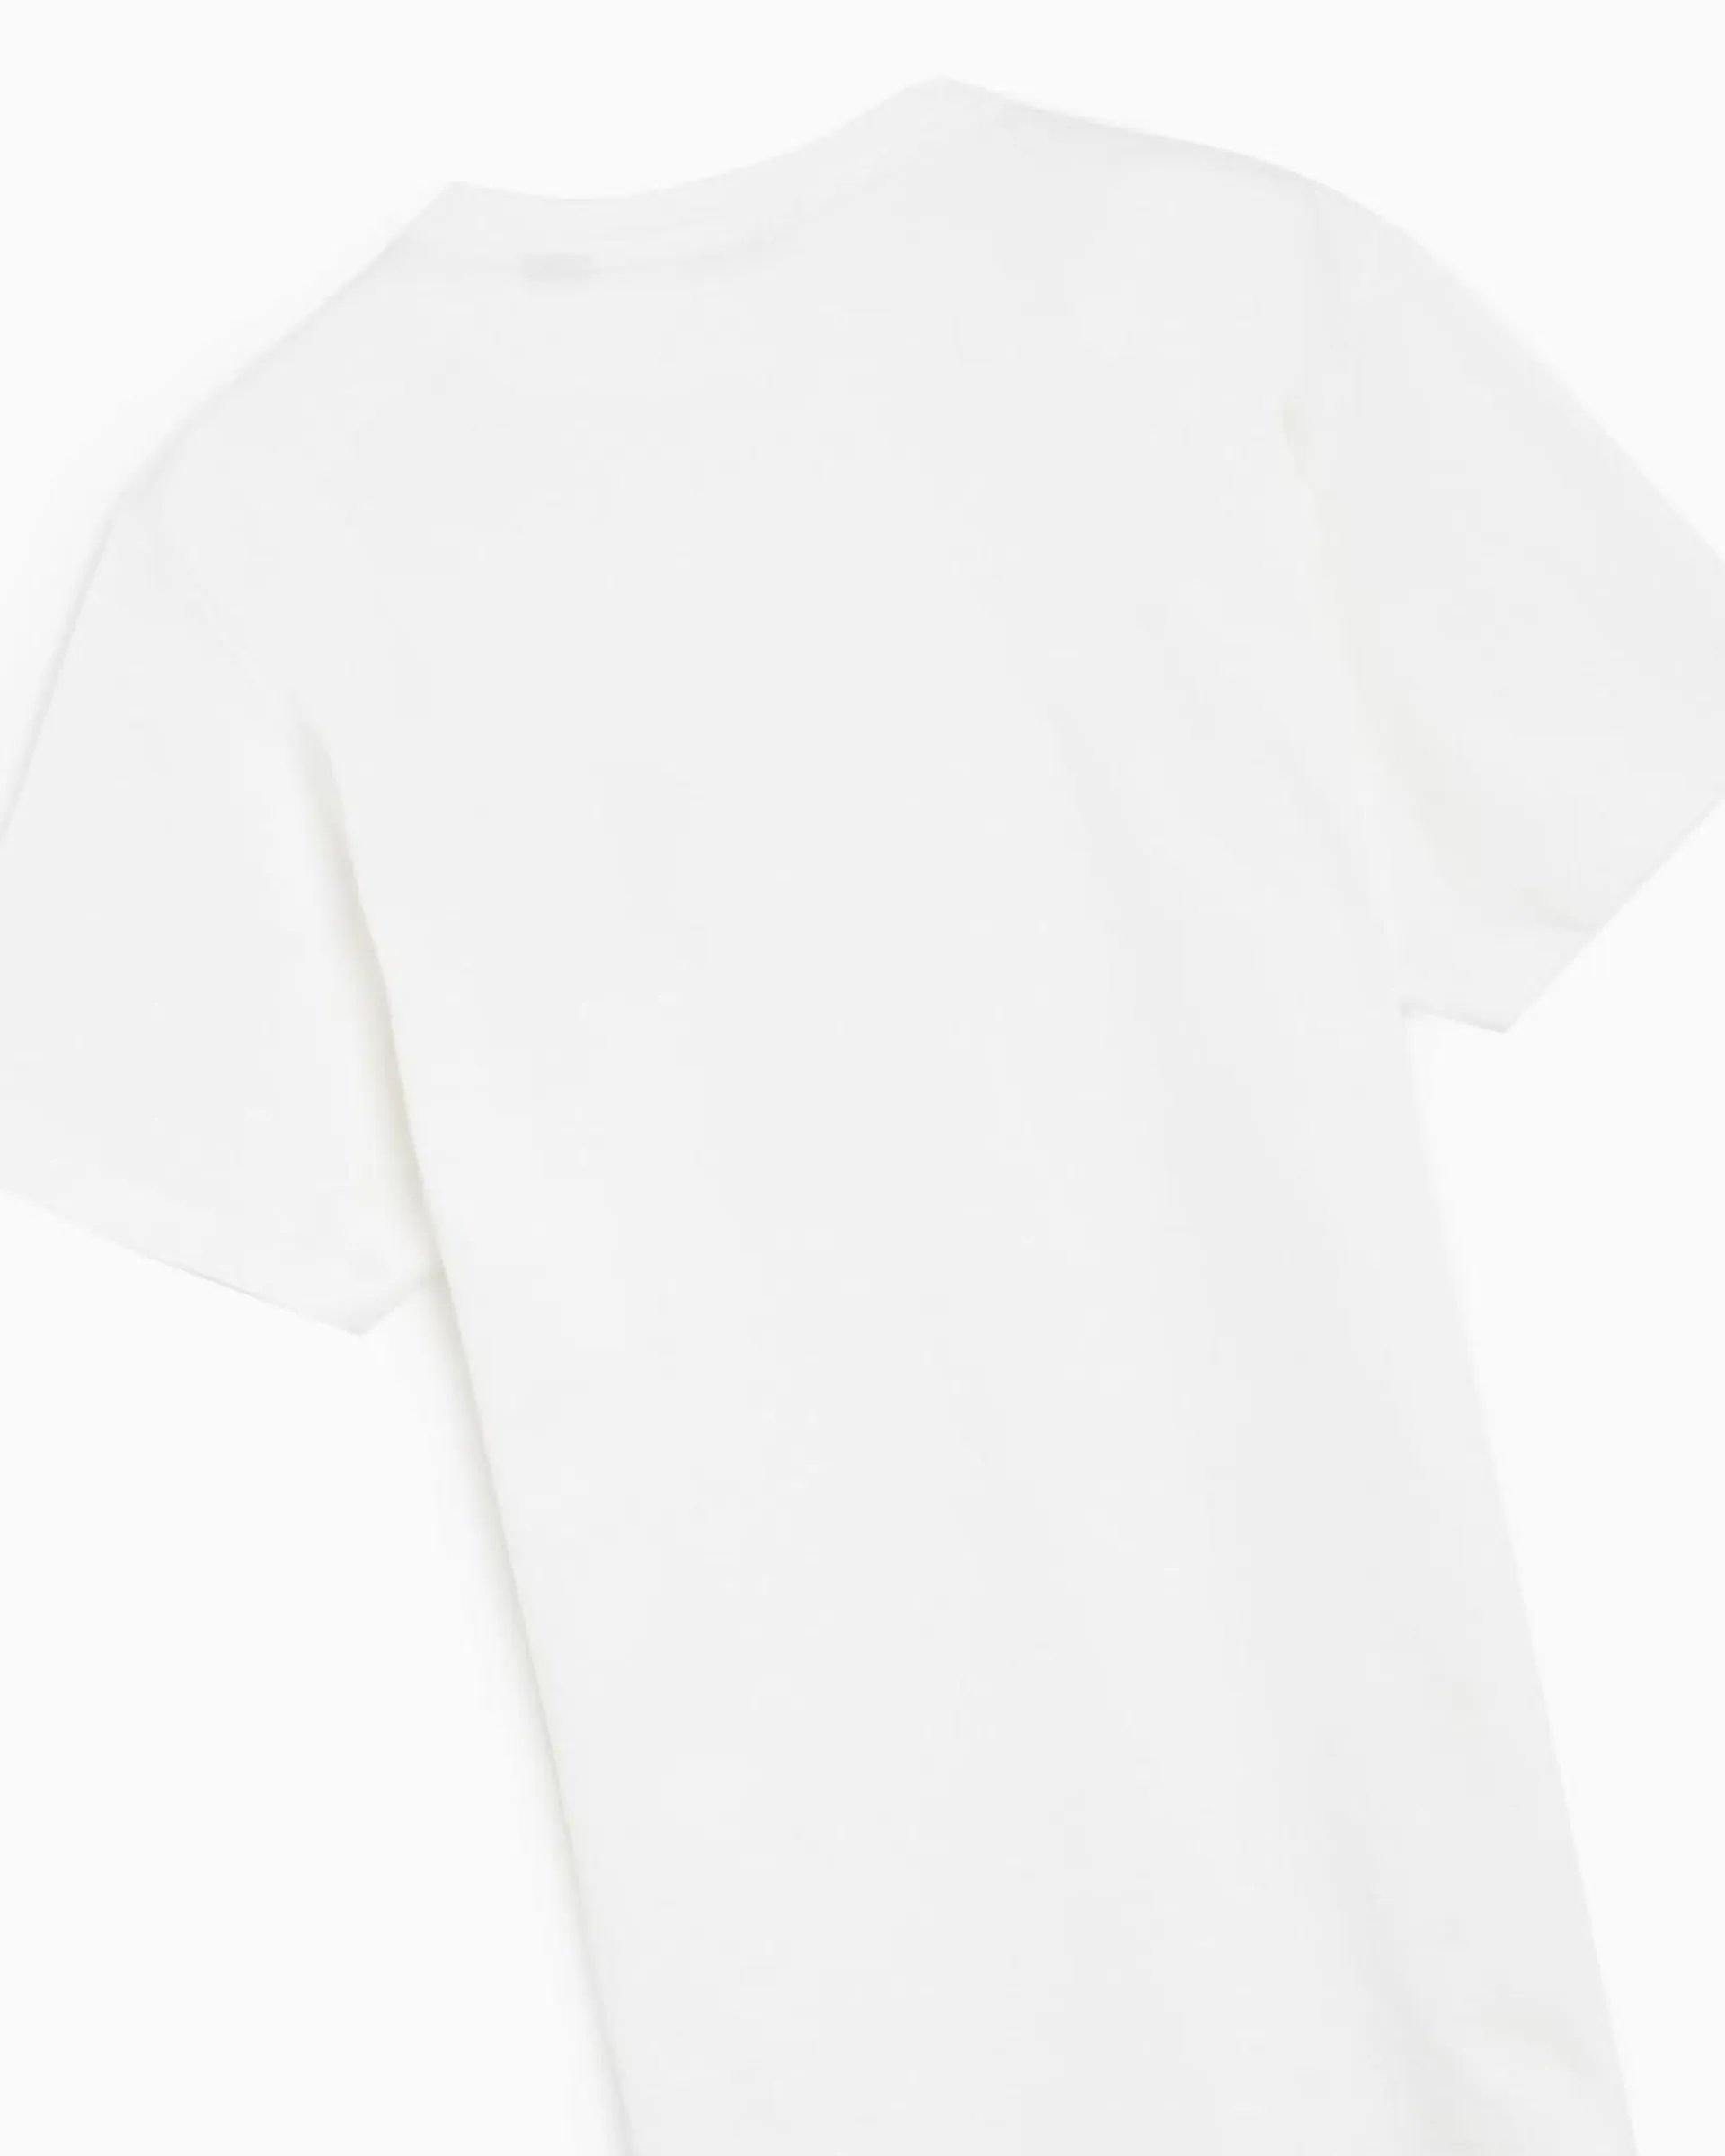 Edmmond Studios Runner Men's T-Shirt